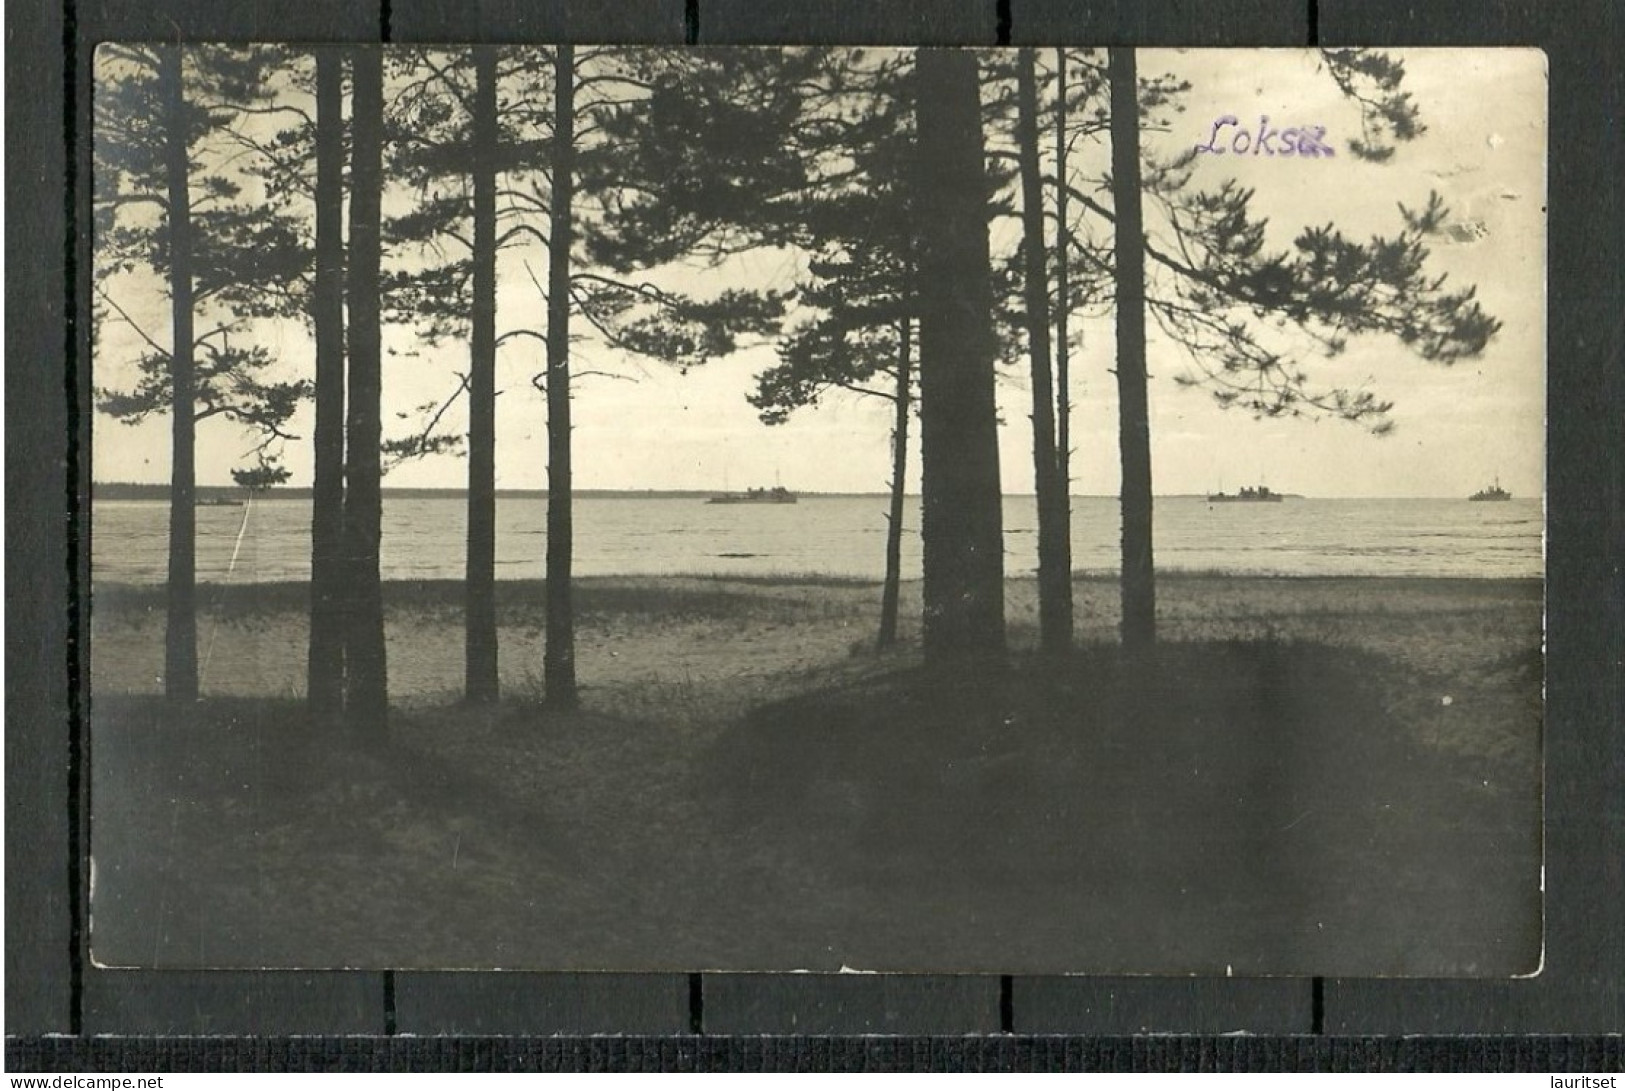 Estonia Estland Ca. 1920 LOKSA Strand Ships Schiffe, Photo Post Card, Unused - Estland